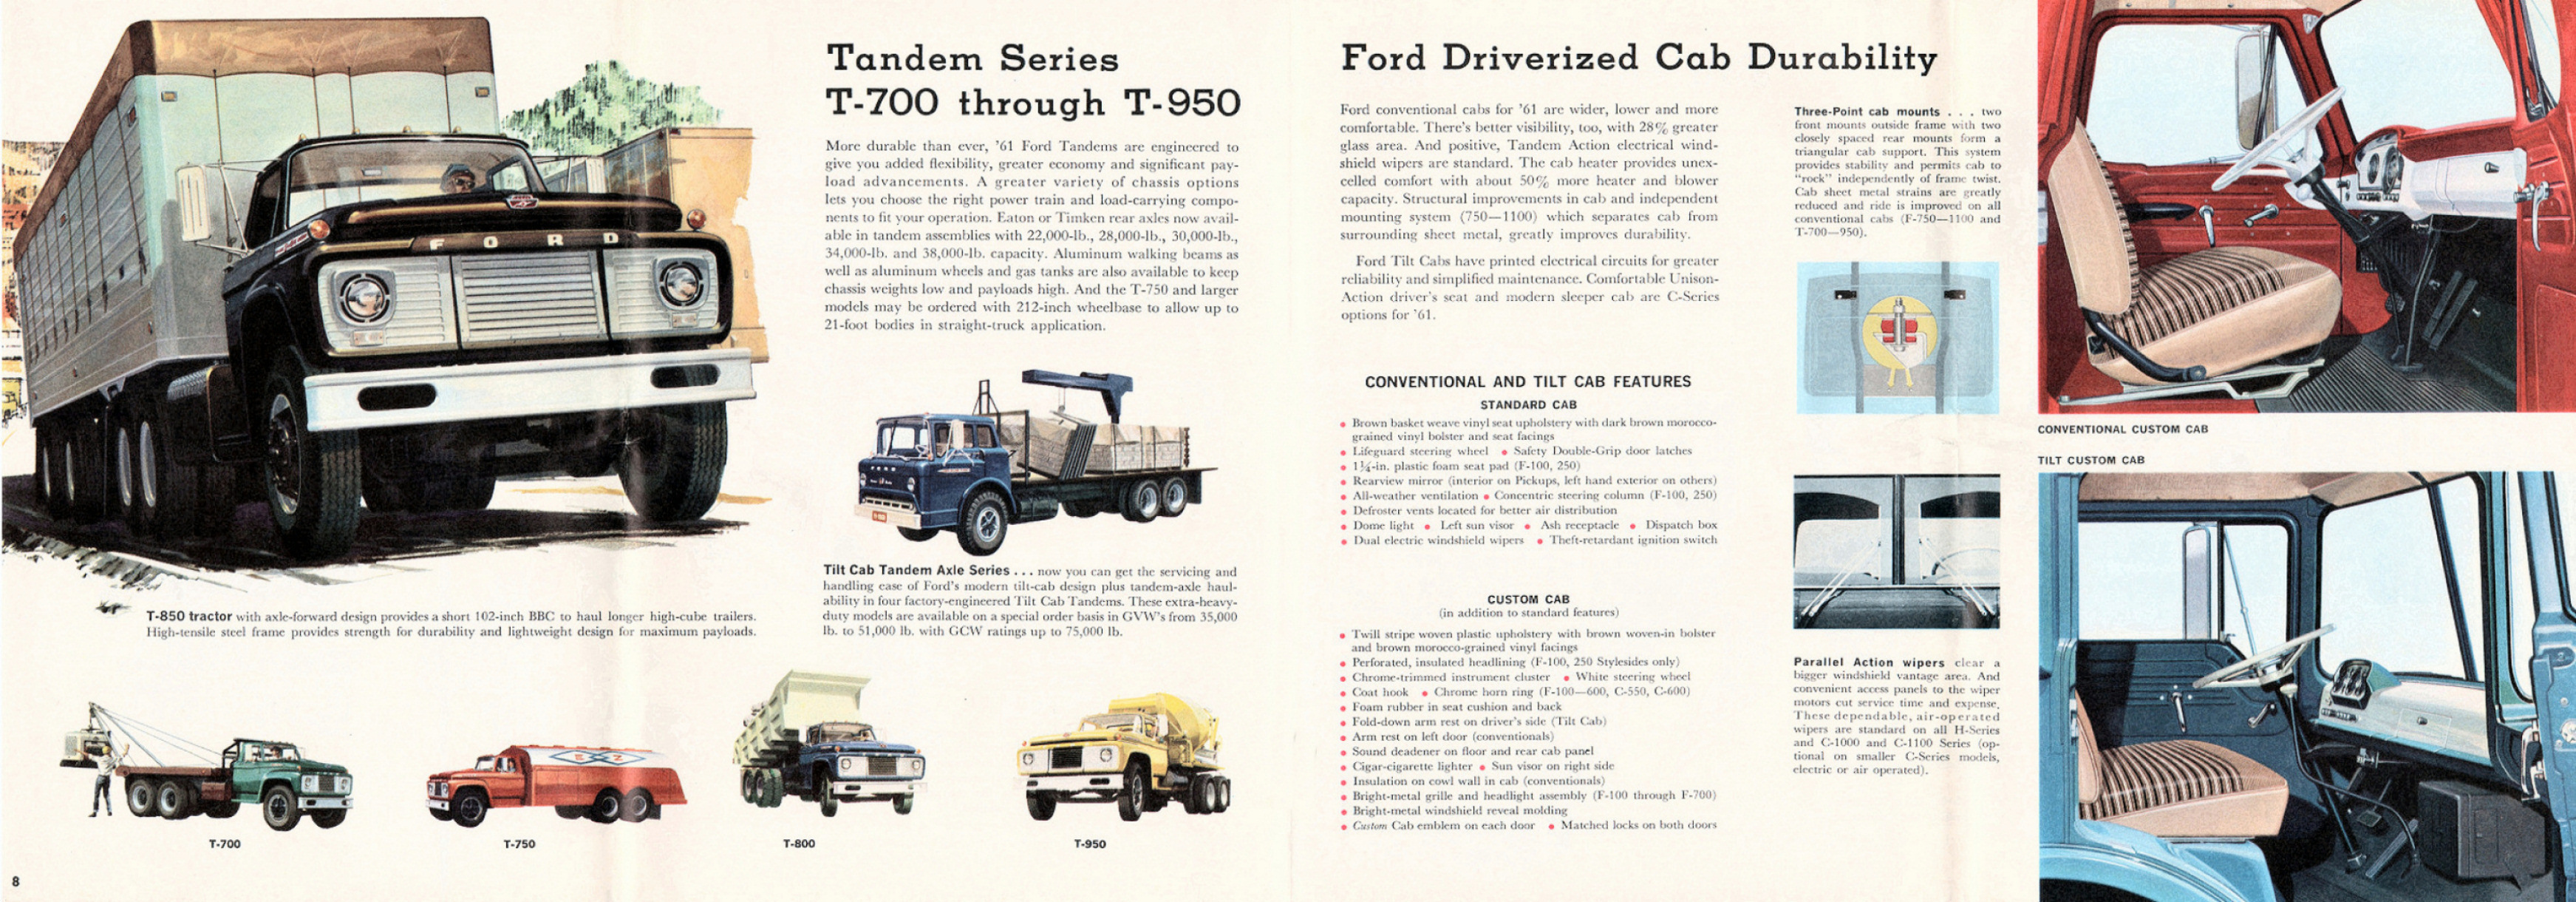 1961_Ford_Truck_Full_Line-08-09